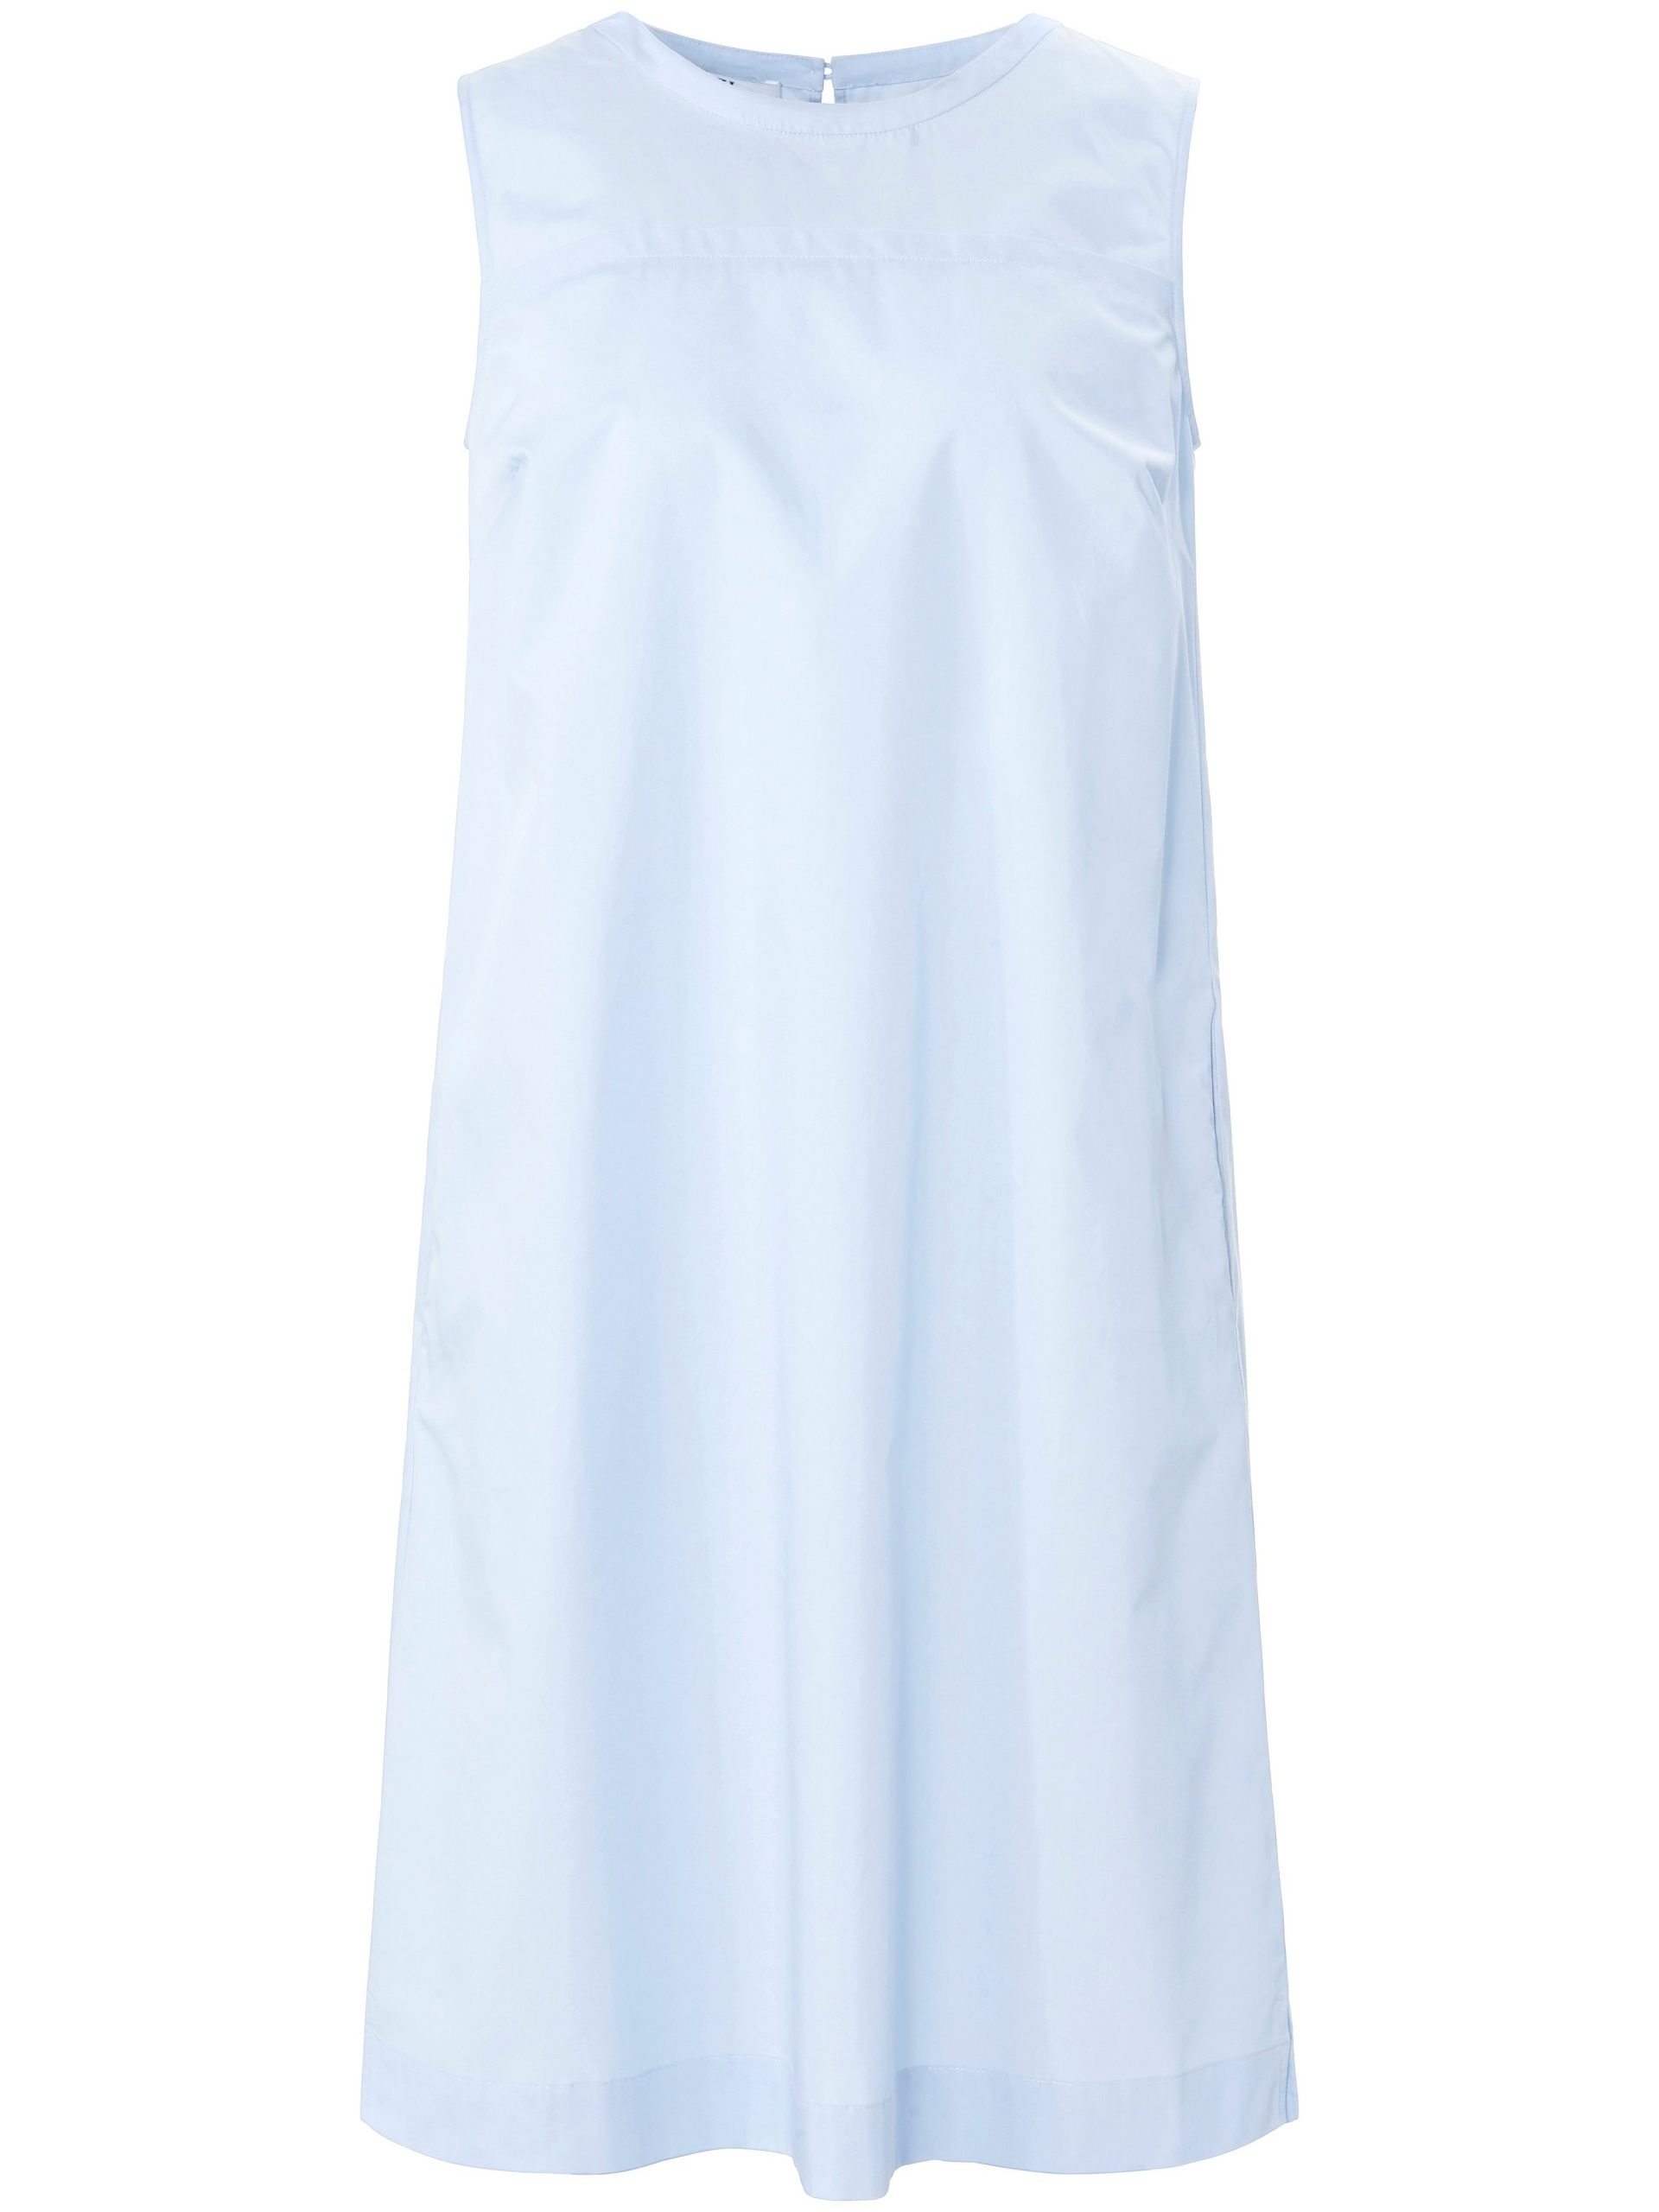 Mouwloze jurk 100% katoen plooien achter Van Peter Hahn blauw